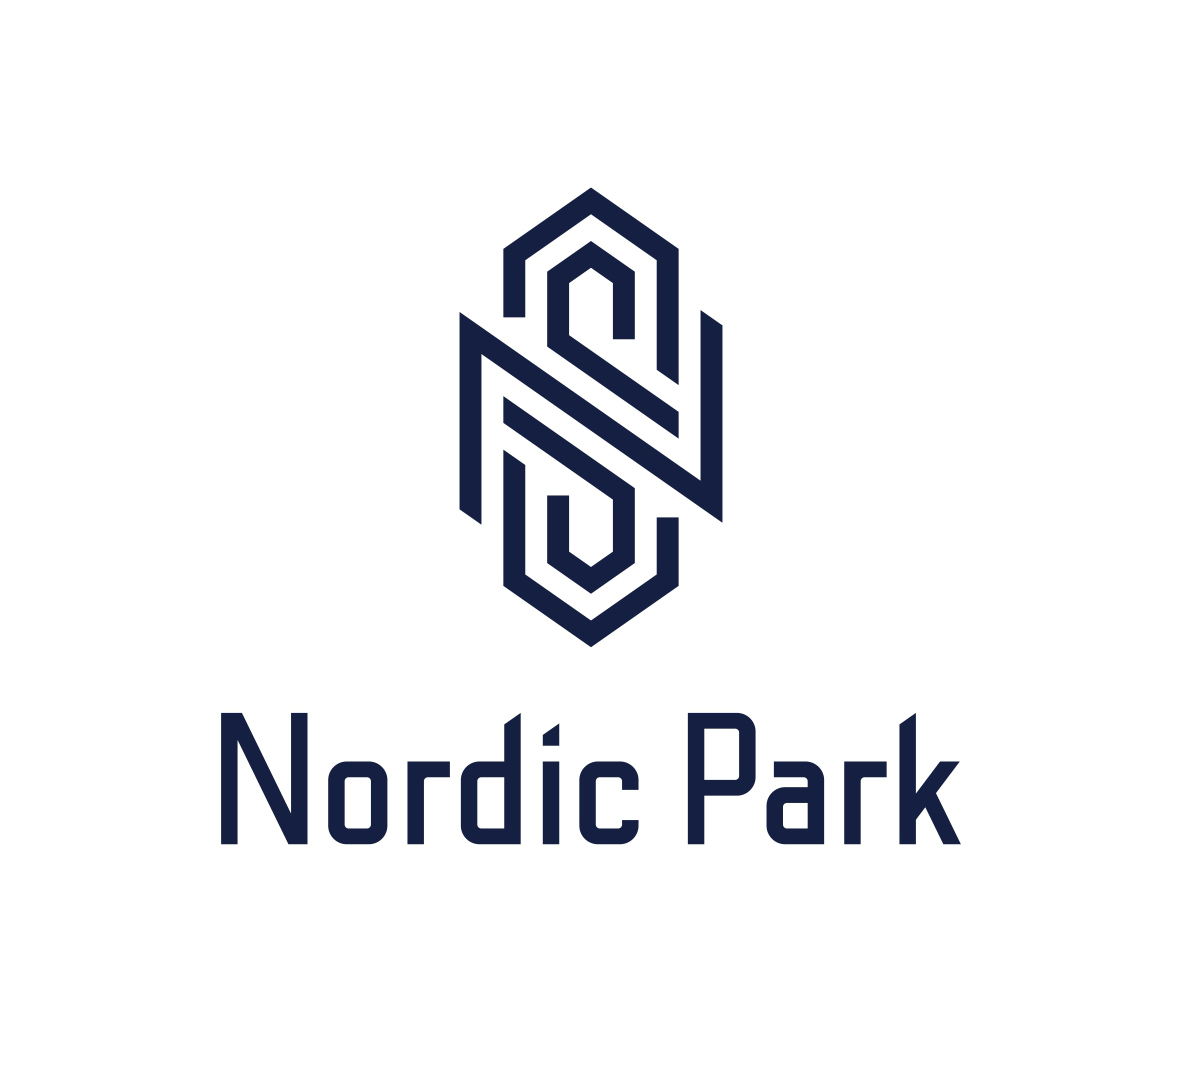 Nordic Park коттеджный поселок. Нордик парк коттеджный поселок. Нордик коттеджный поселок. КП Нордик новая Рига. Нордик банк